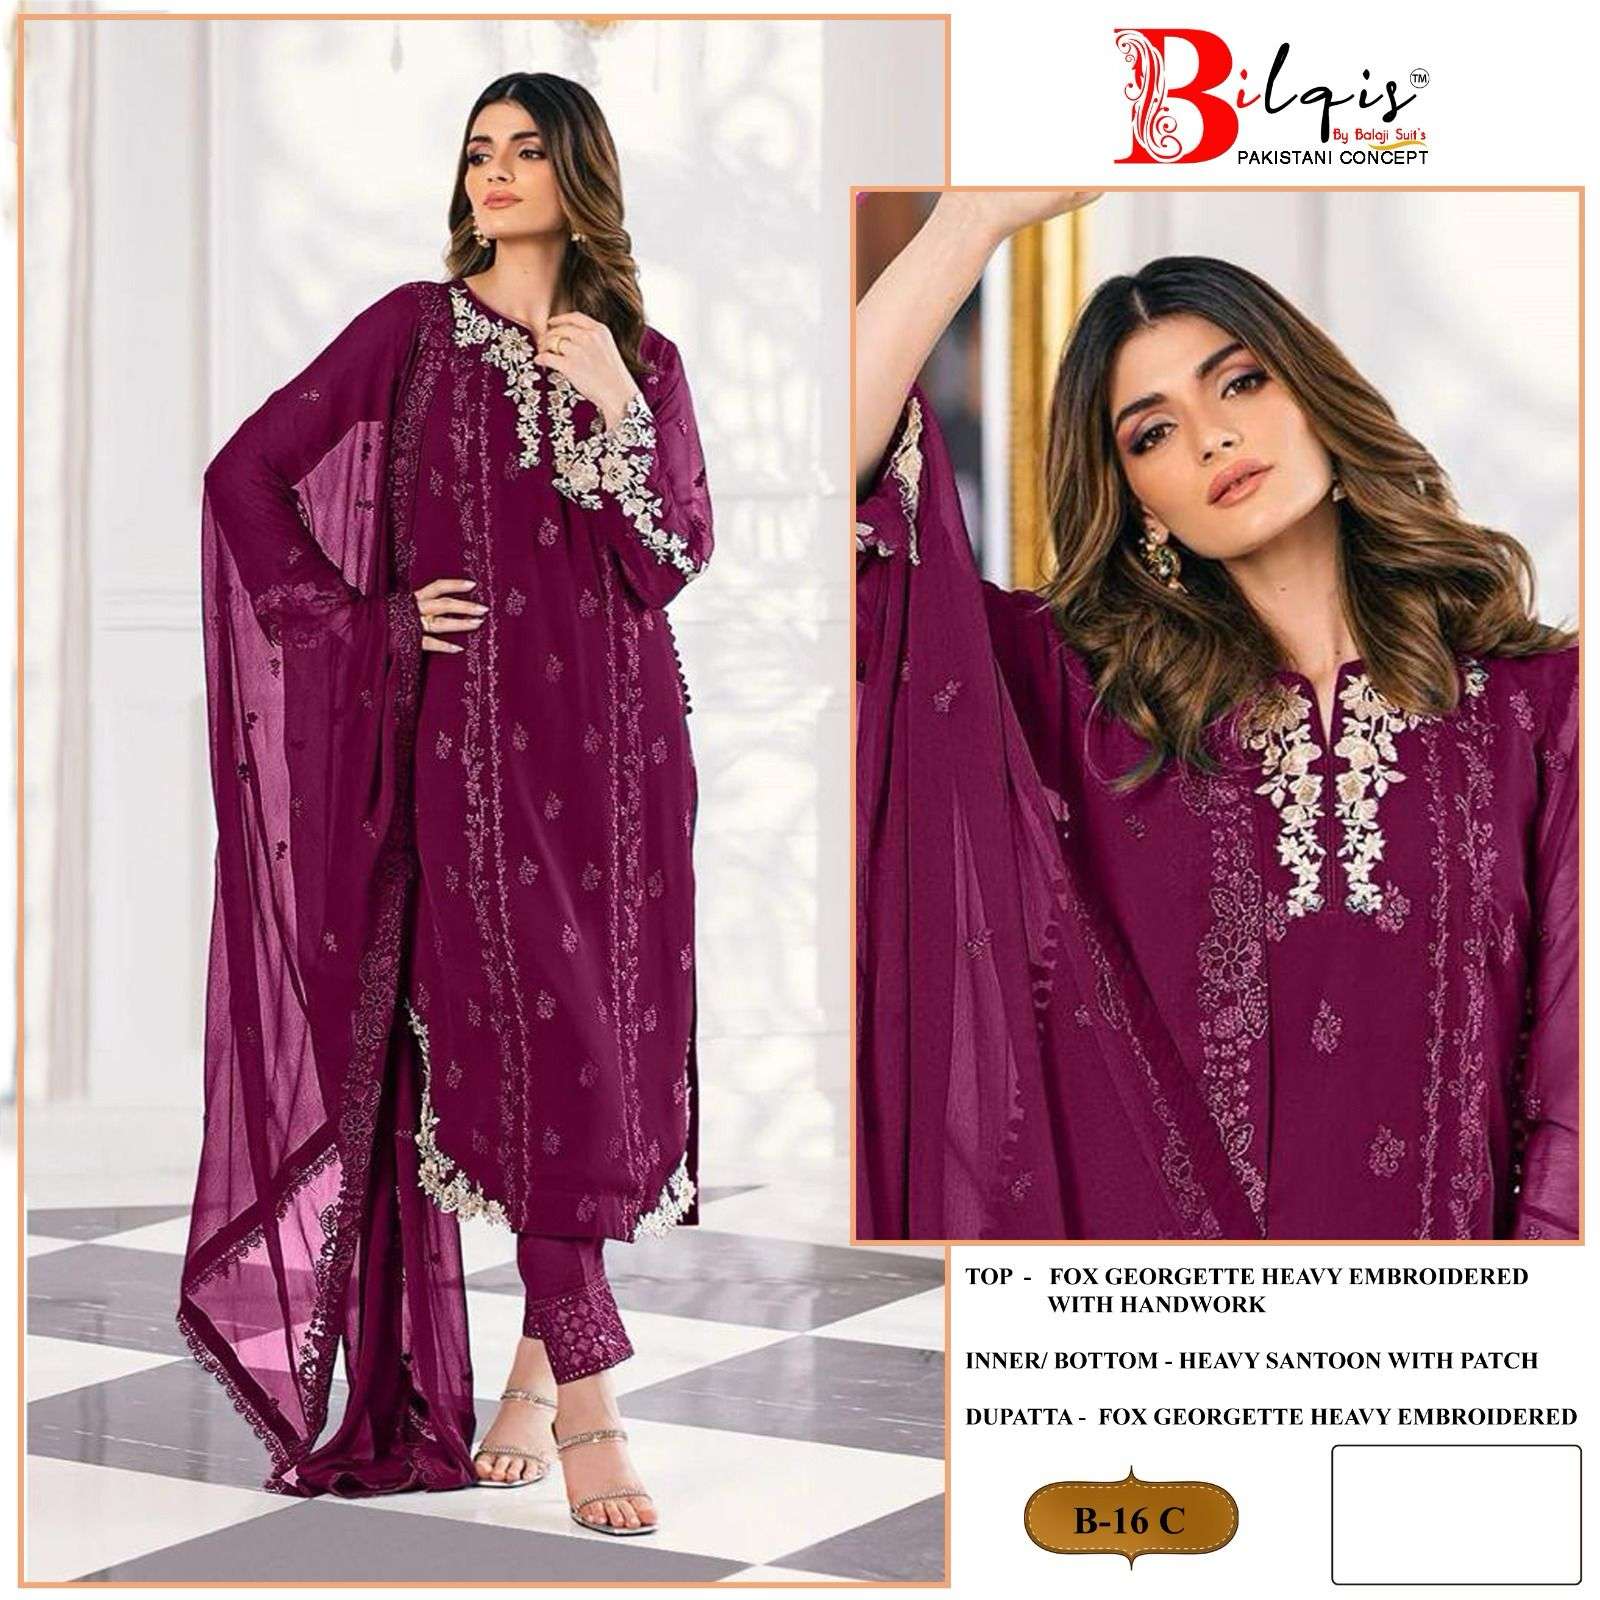 Bilqis B 16 A to D Faux Georgette Pakistani Suits Wholesale catalog